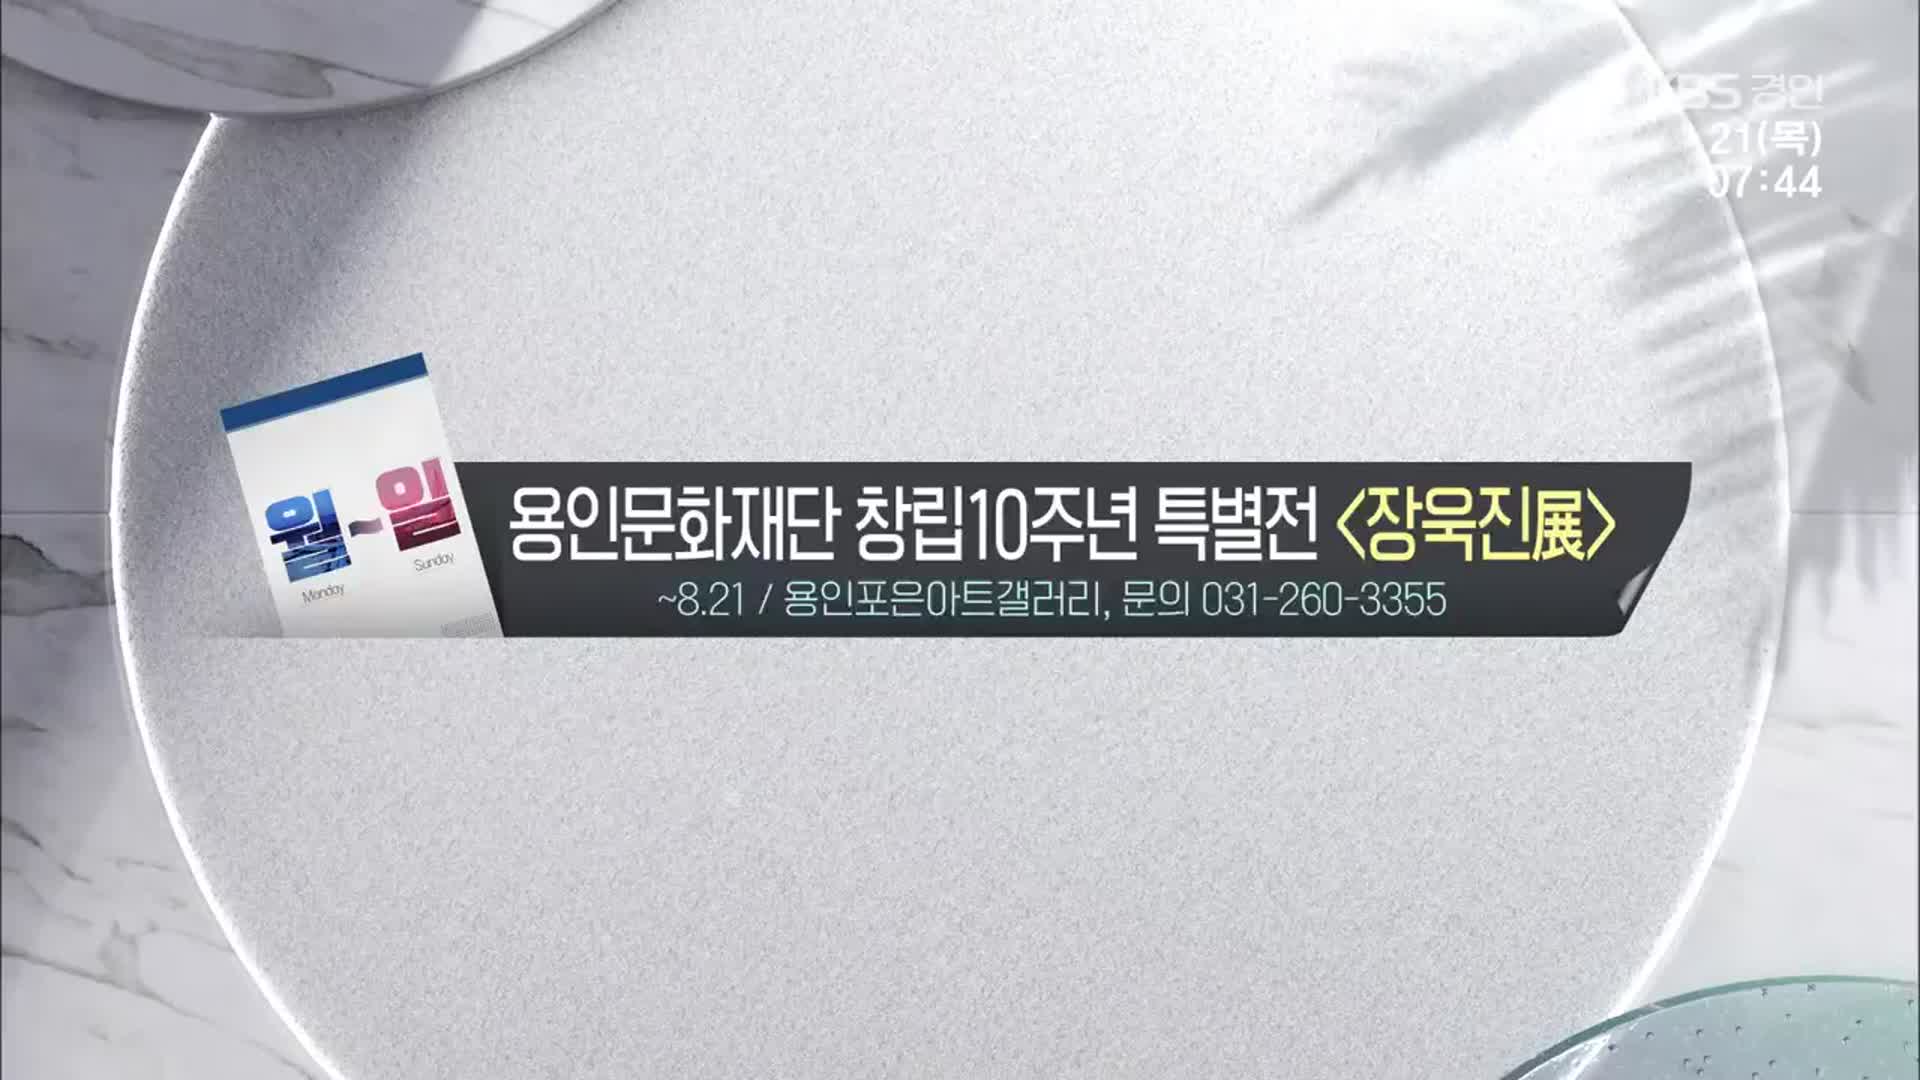 [경인 게시판] 용인문화재단 창립10주년 특별전 ‘장욱진展’ 외